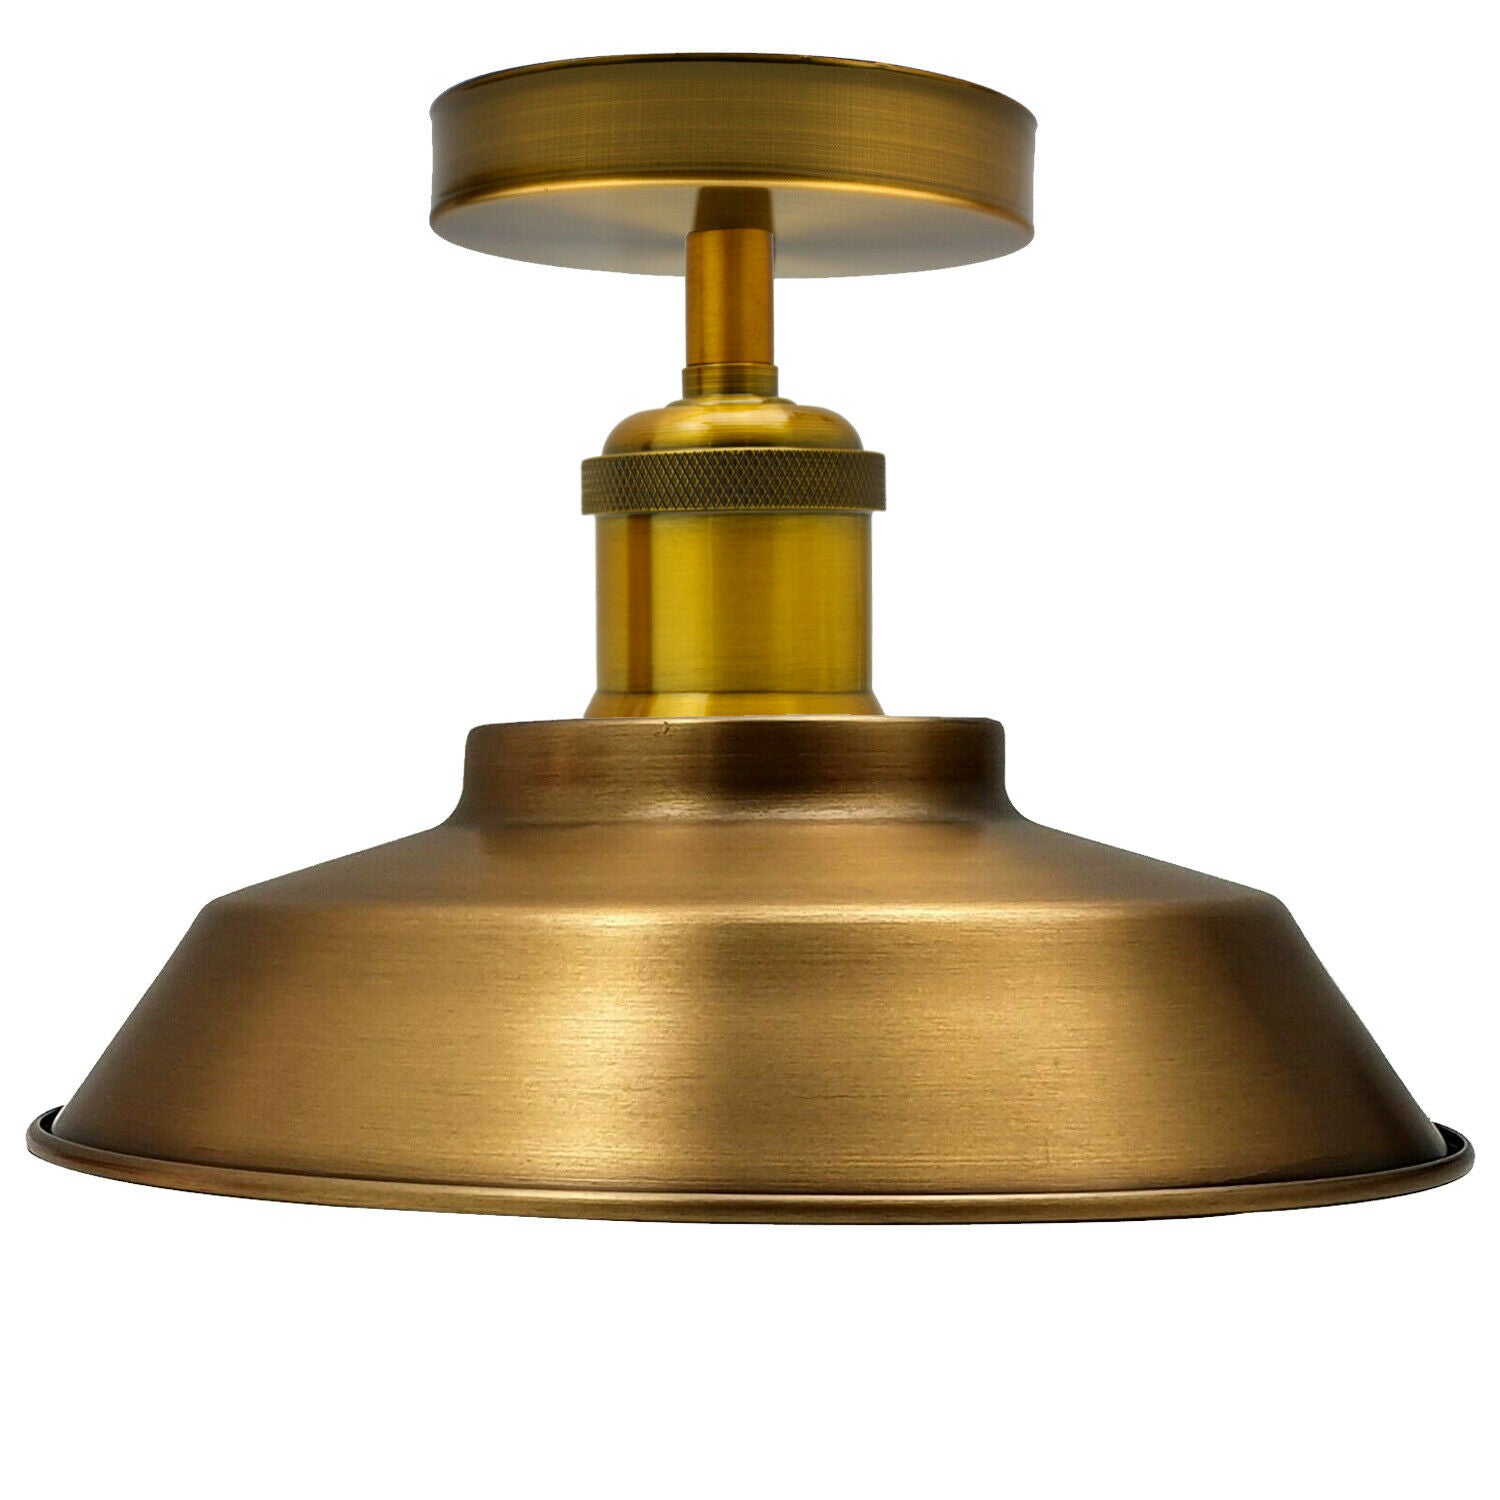 Vintage industriel loftslampe, 22 cm, metal, gul messing